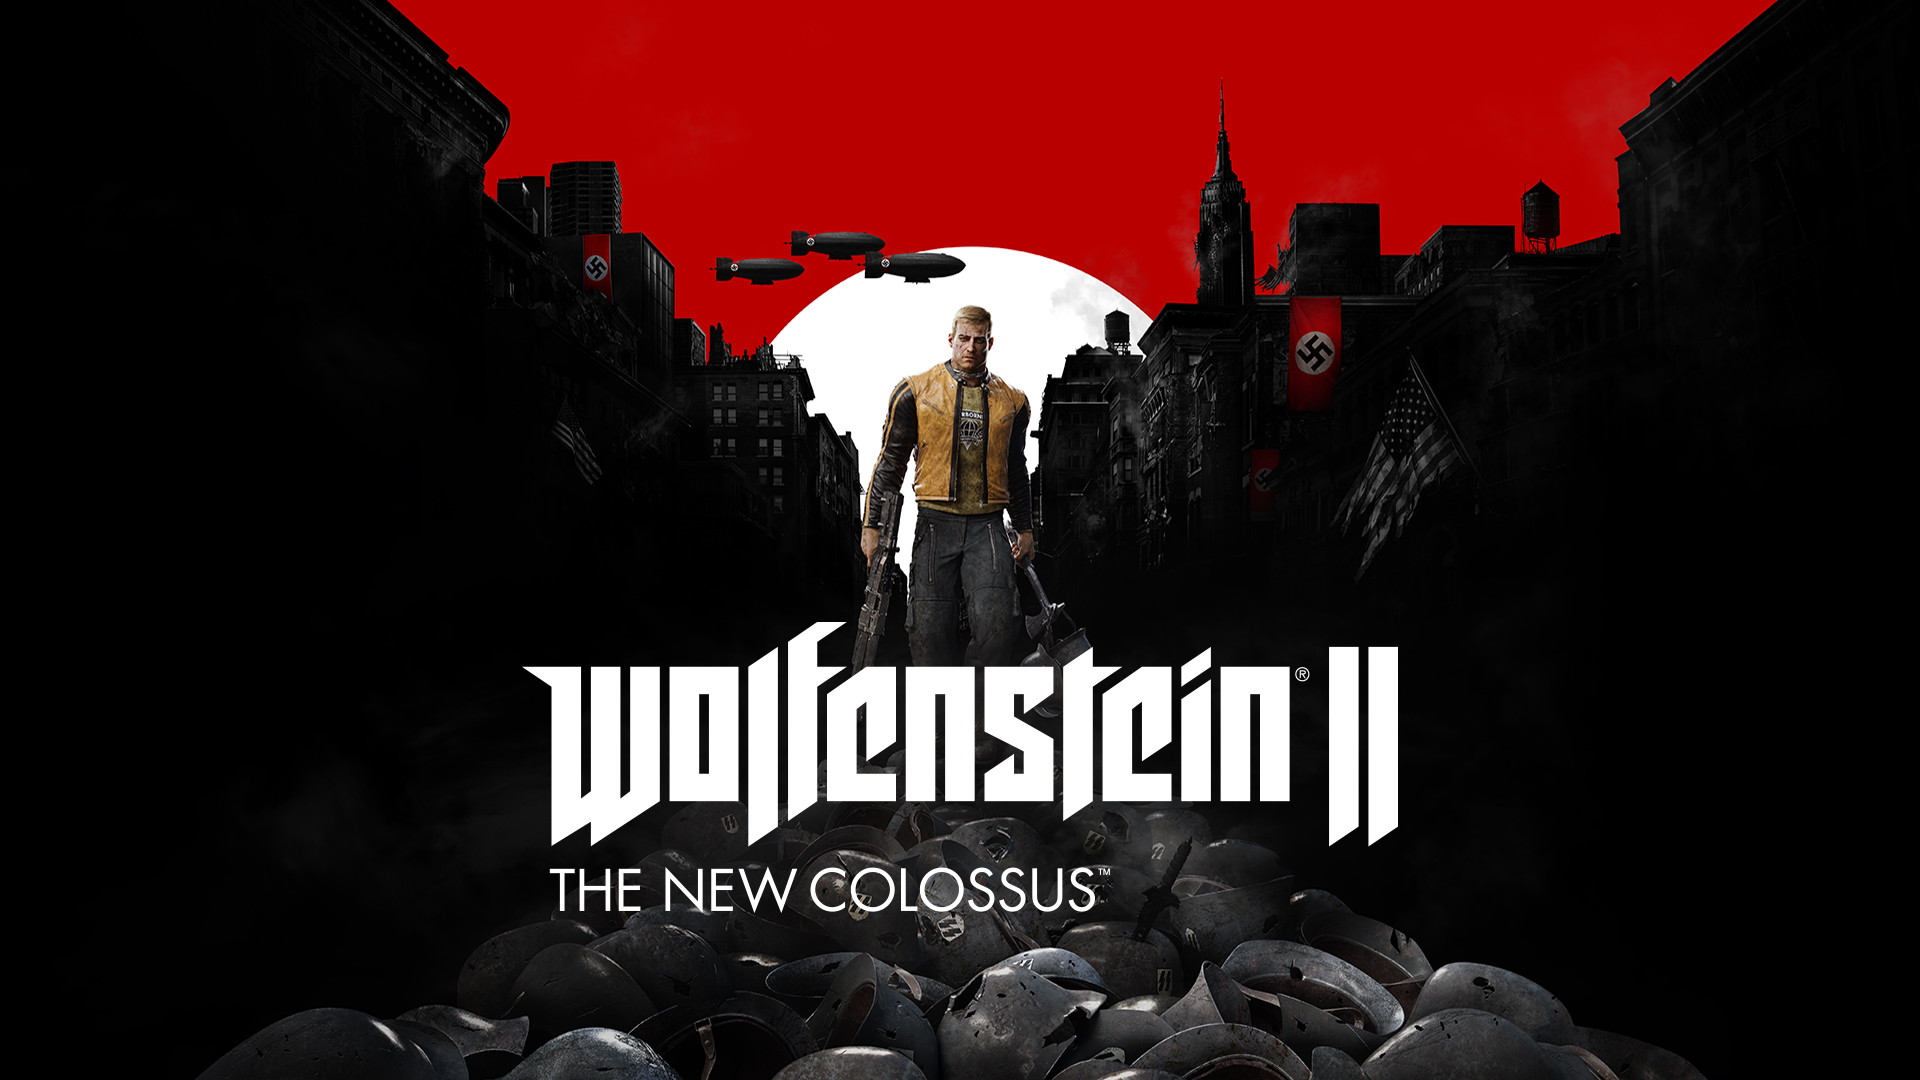 Wolfenstein II Poster